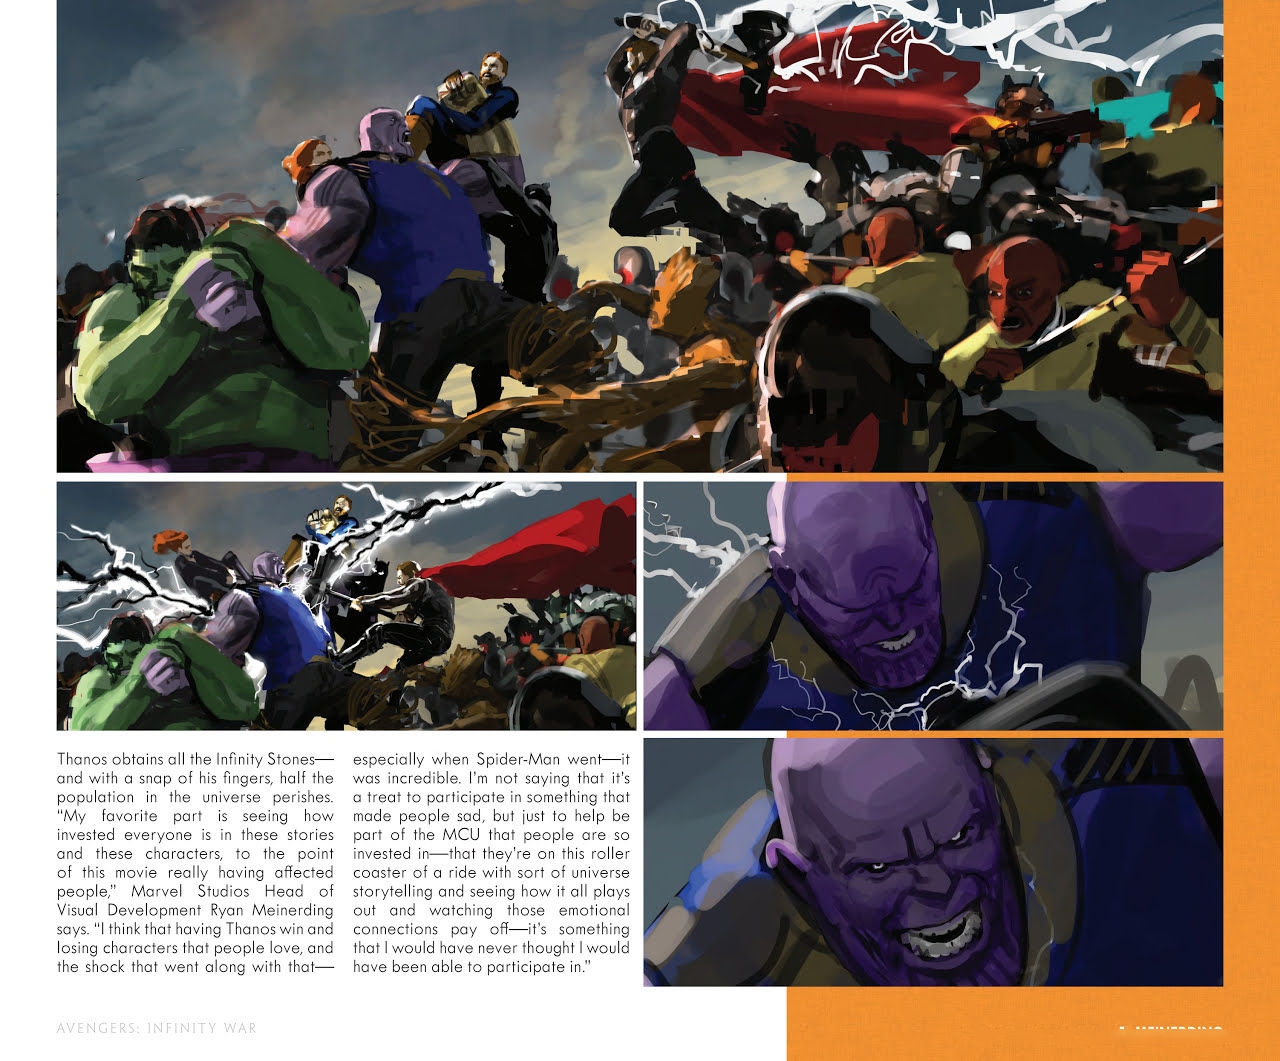 The Art of Marvel's Avengers Infinity War 324